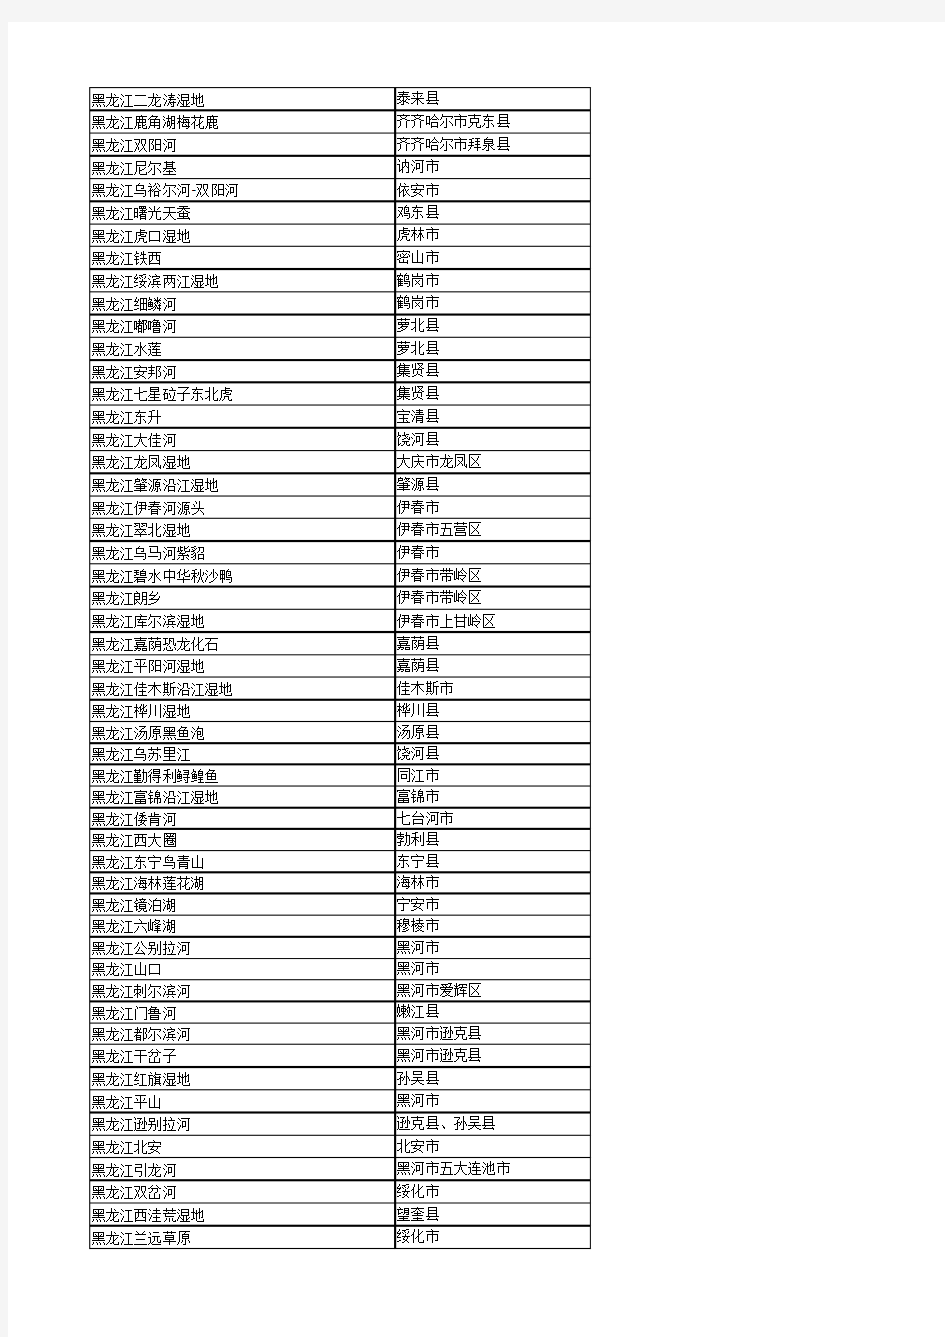 黑龙江省自然保护区名录(截止2014年底)